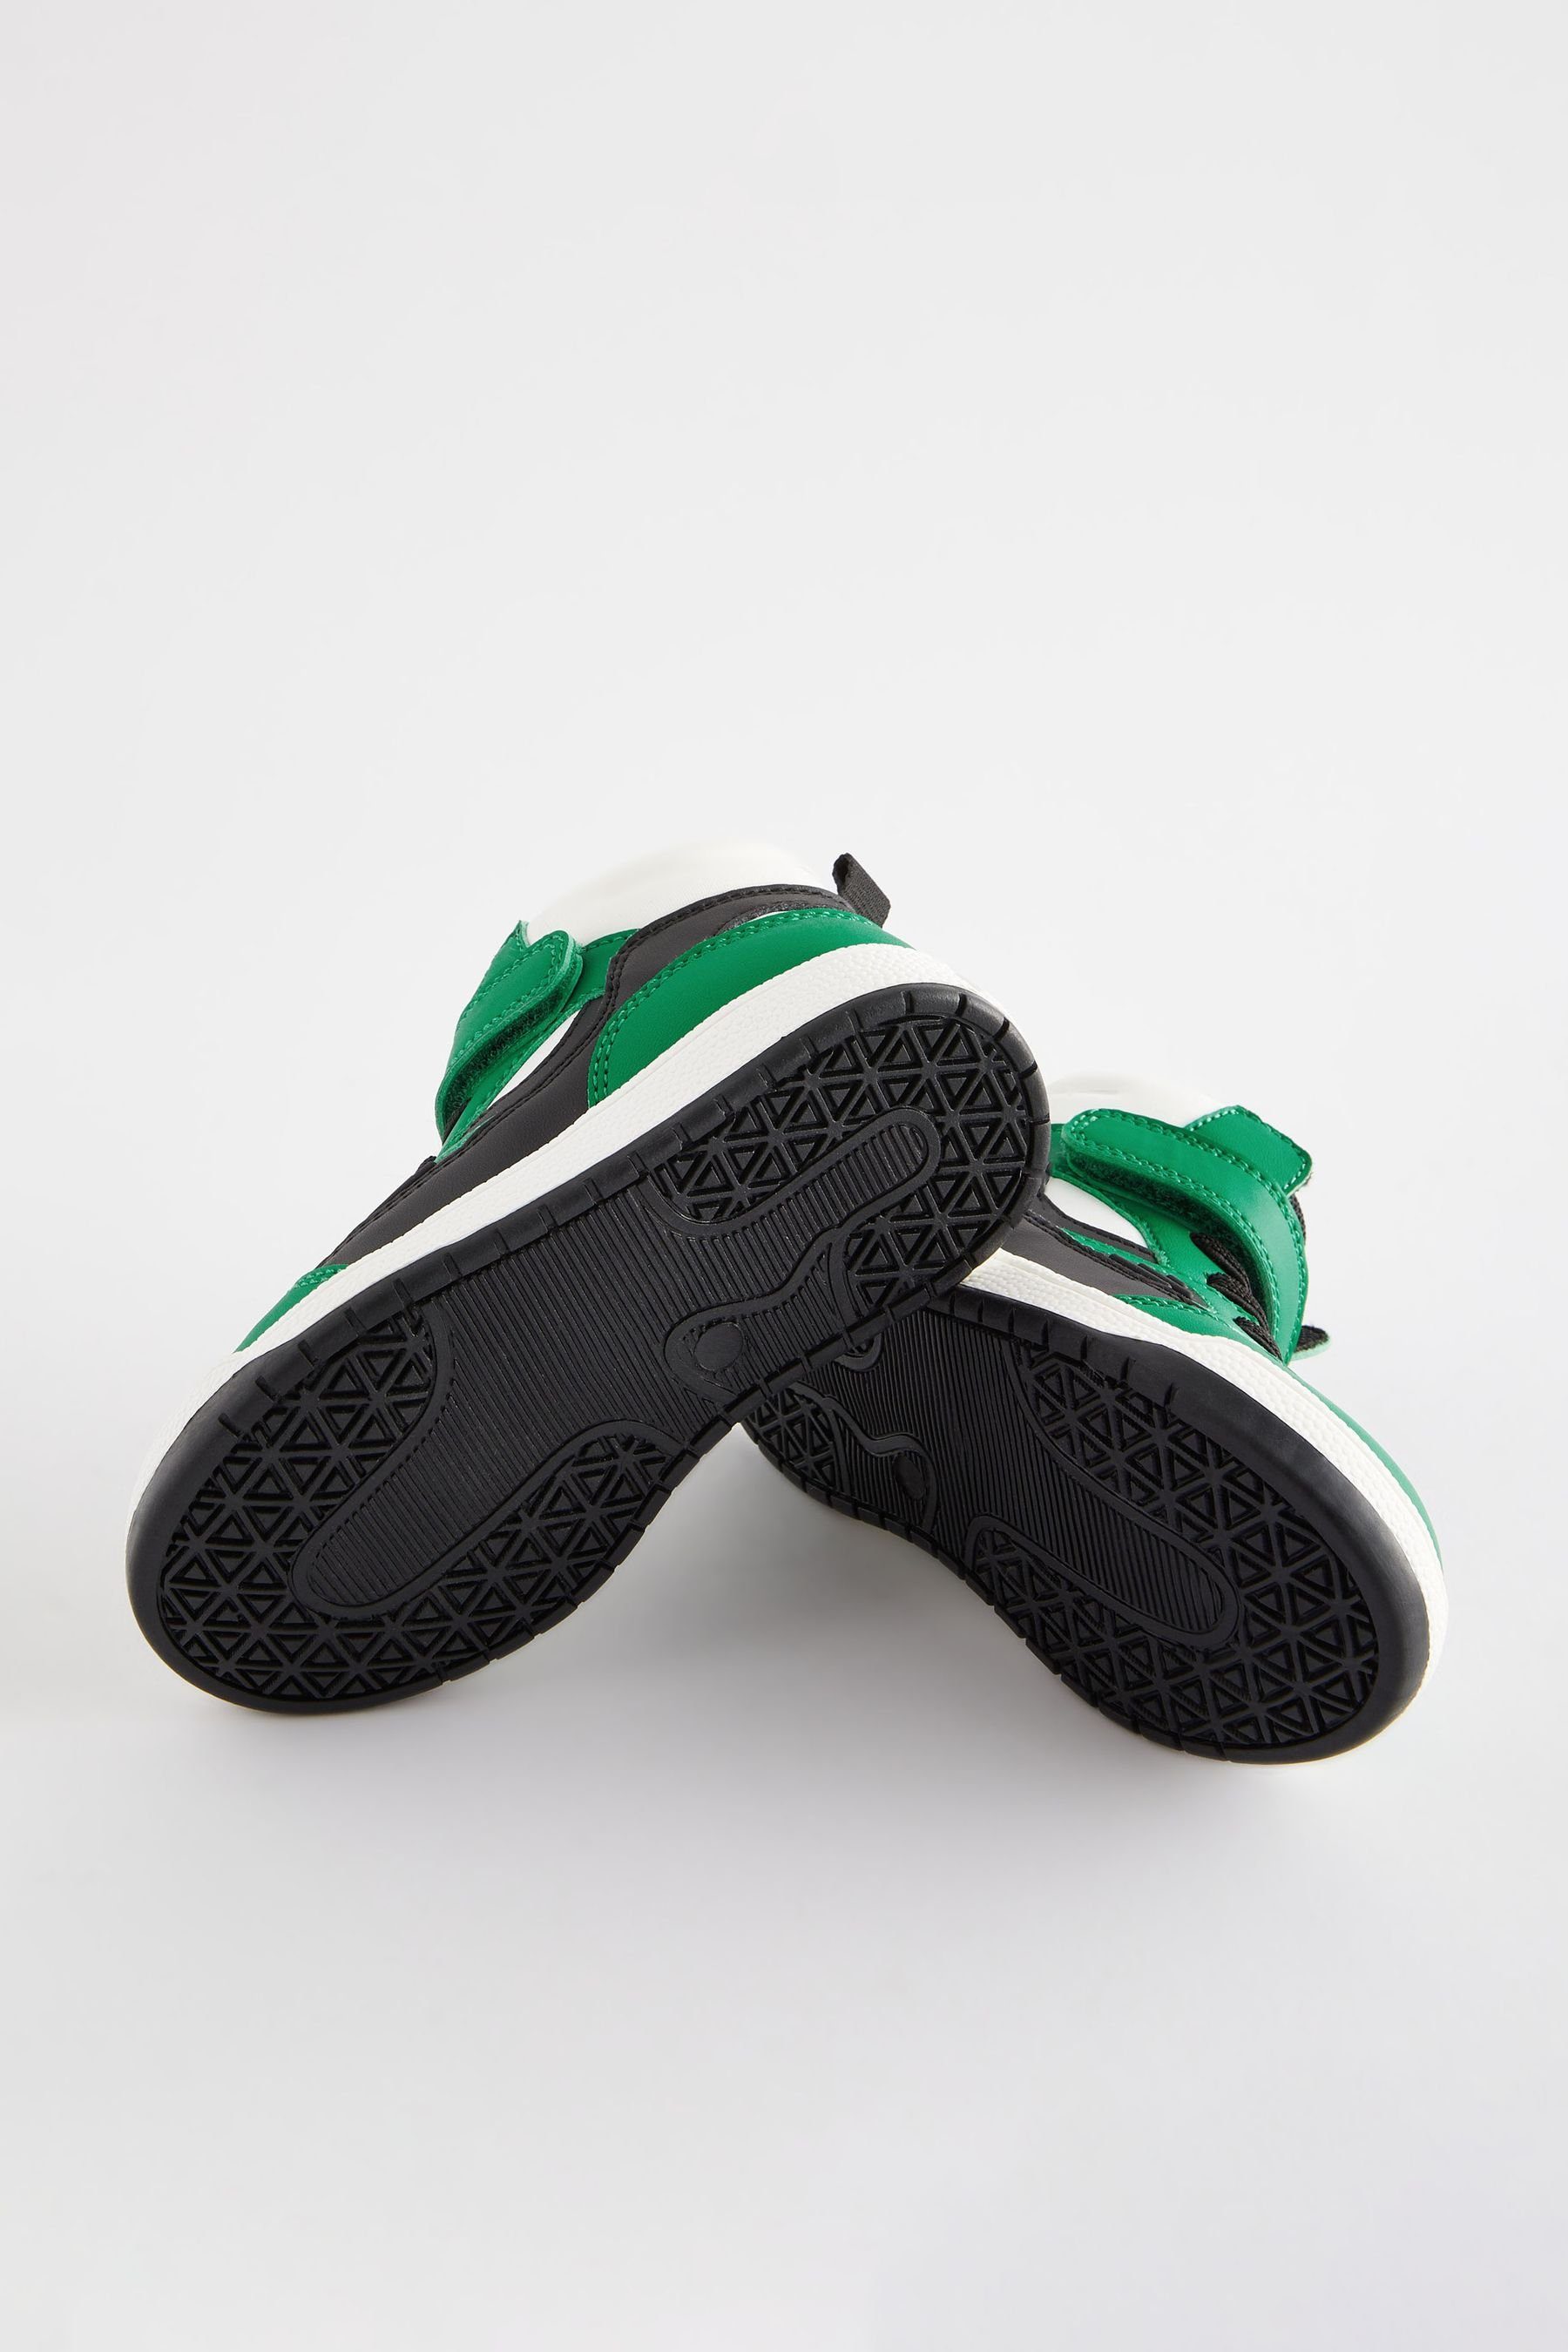 Next Hi-Top-Stiefel mit Elastiksenkel Green (1-tlg) Klettverschluss Sneaker Bright